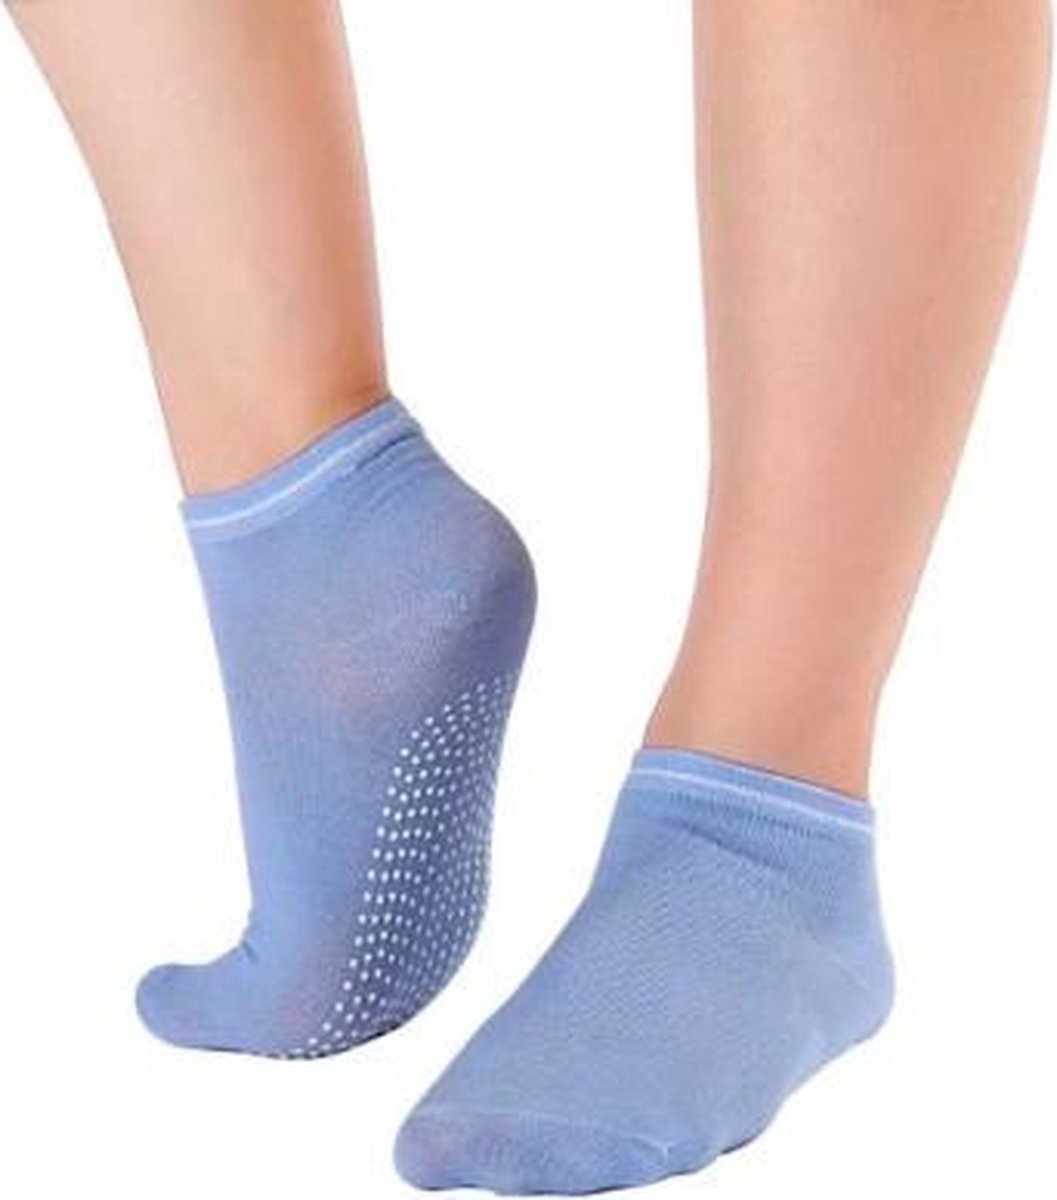 CHPN - Sokken - Anti-slip sokken - Sportsokken -Yoga sokken - Fitness sokken - Lichtblauw - Maat 35/40 - Pilates sokken